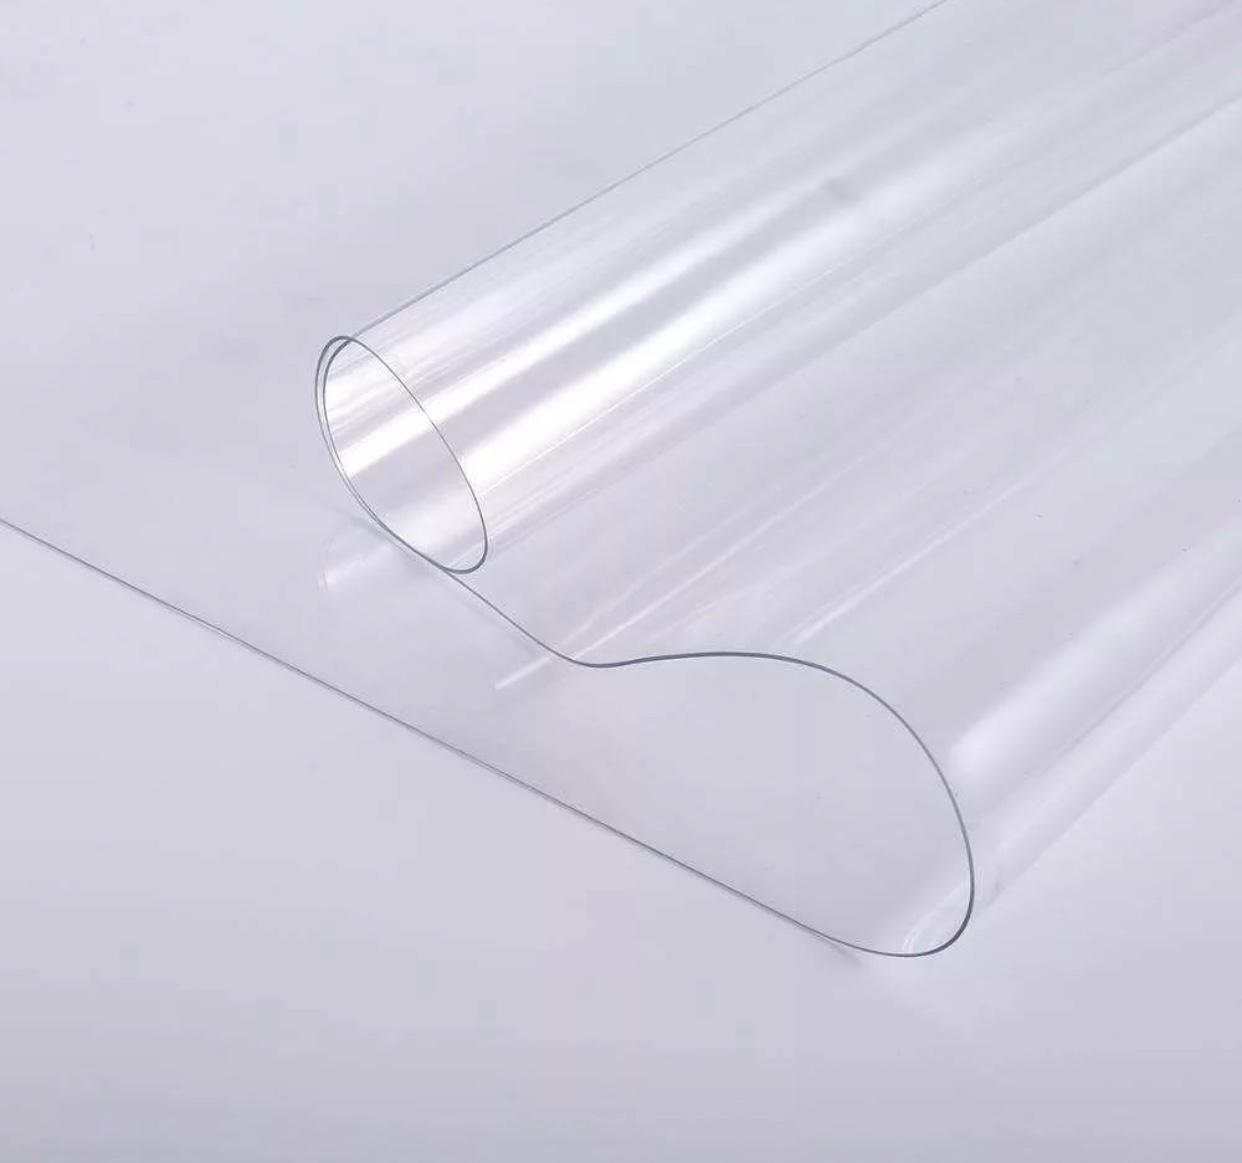 Полиэтилен толщина 1 мм. Пленка ПВХ pvc03196. Пленка ПВХ прозрачная 1 мм (рулон 1,4 x50м). 10mm PVC plaka. Пленка жесткая Multiglass ПВХ прозрачная шир 1 м.